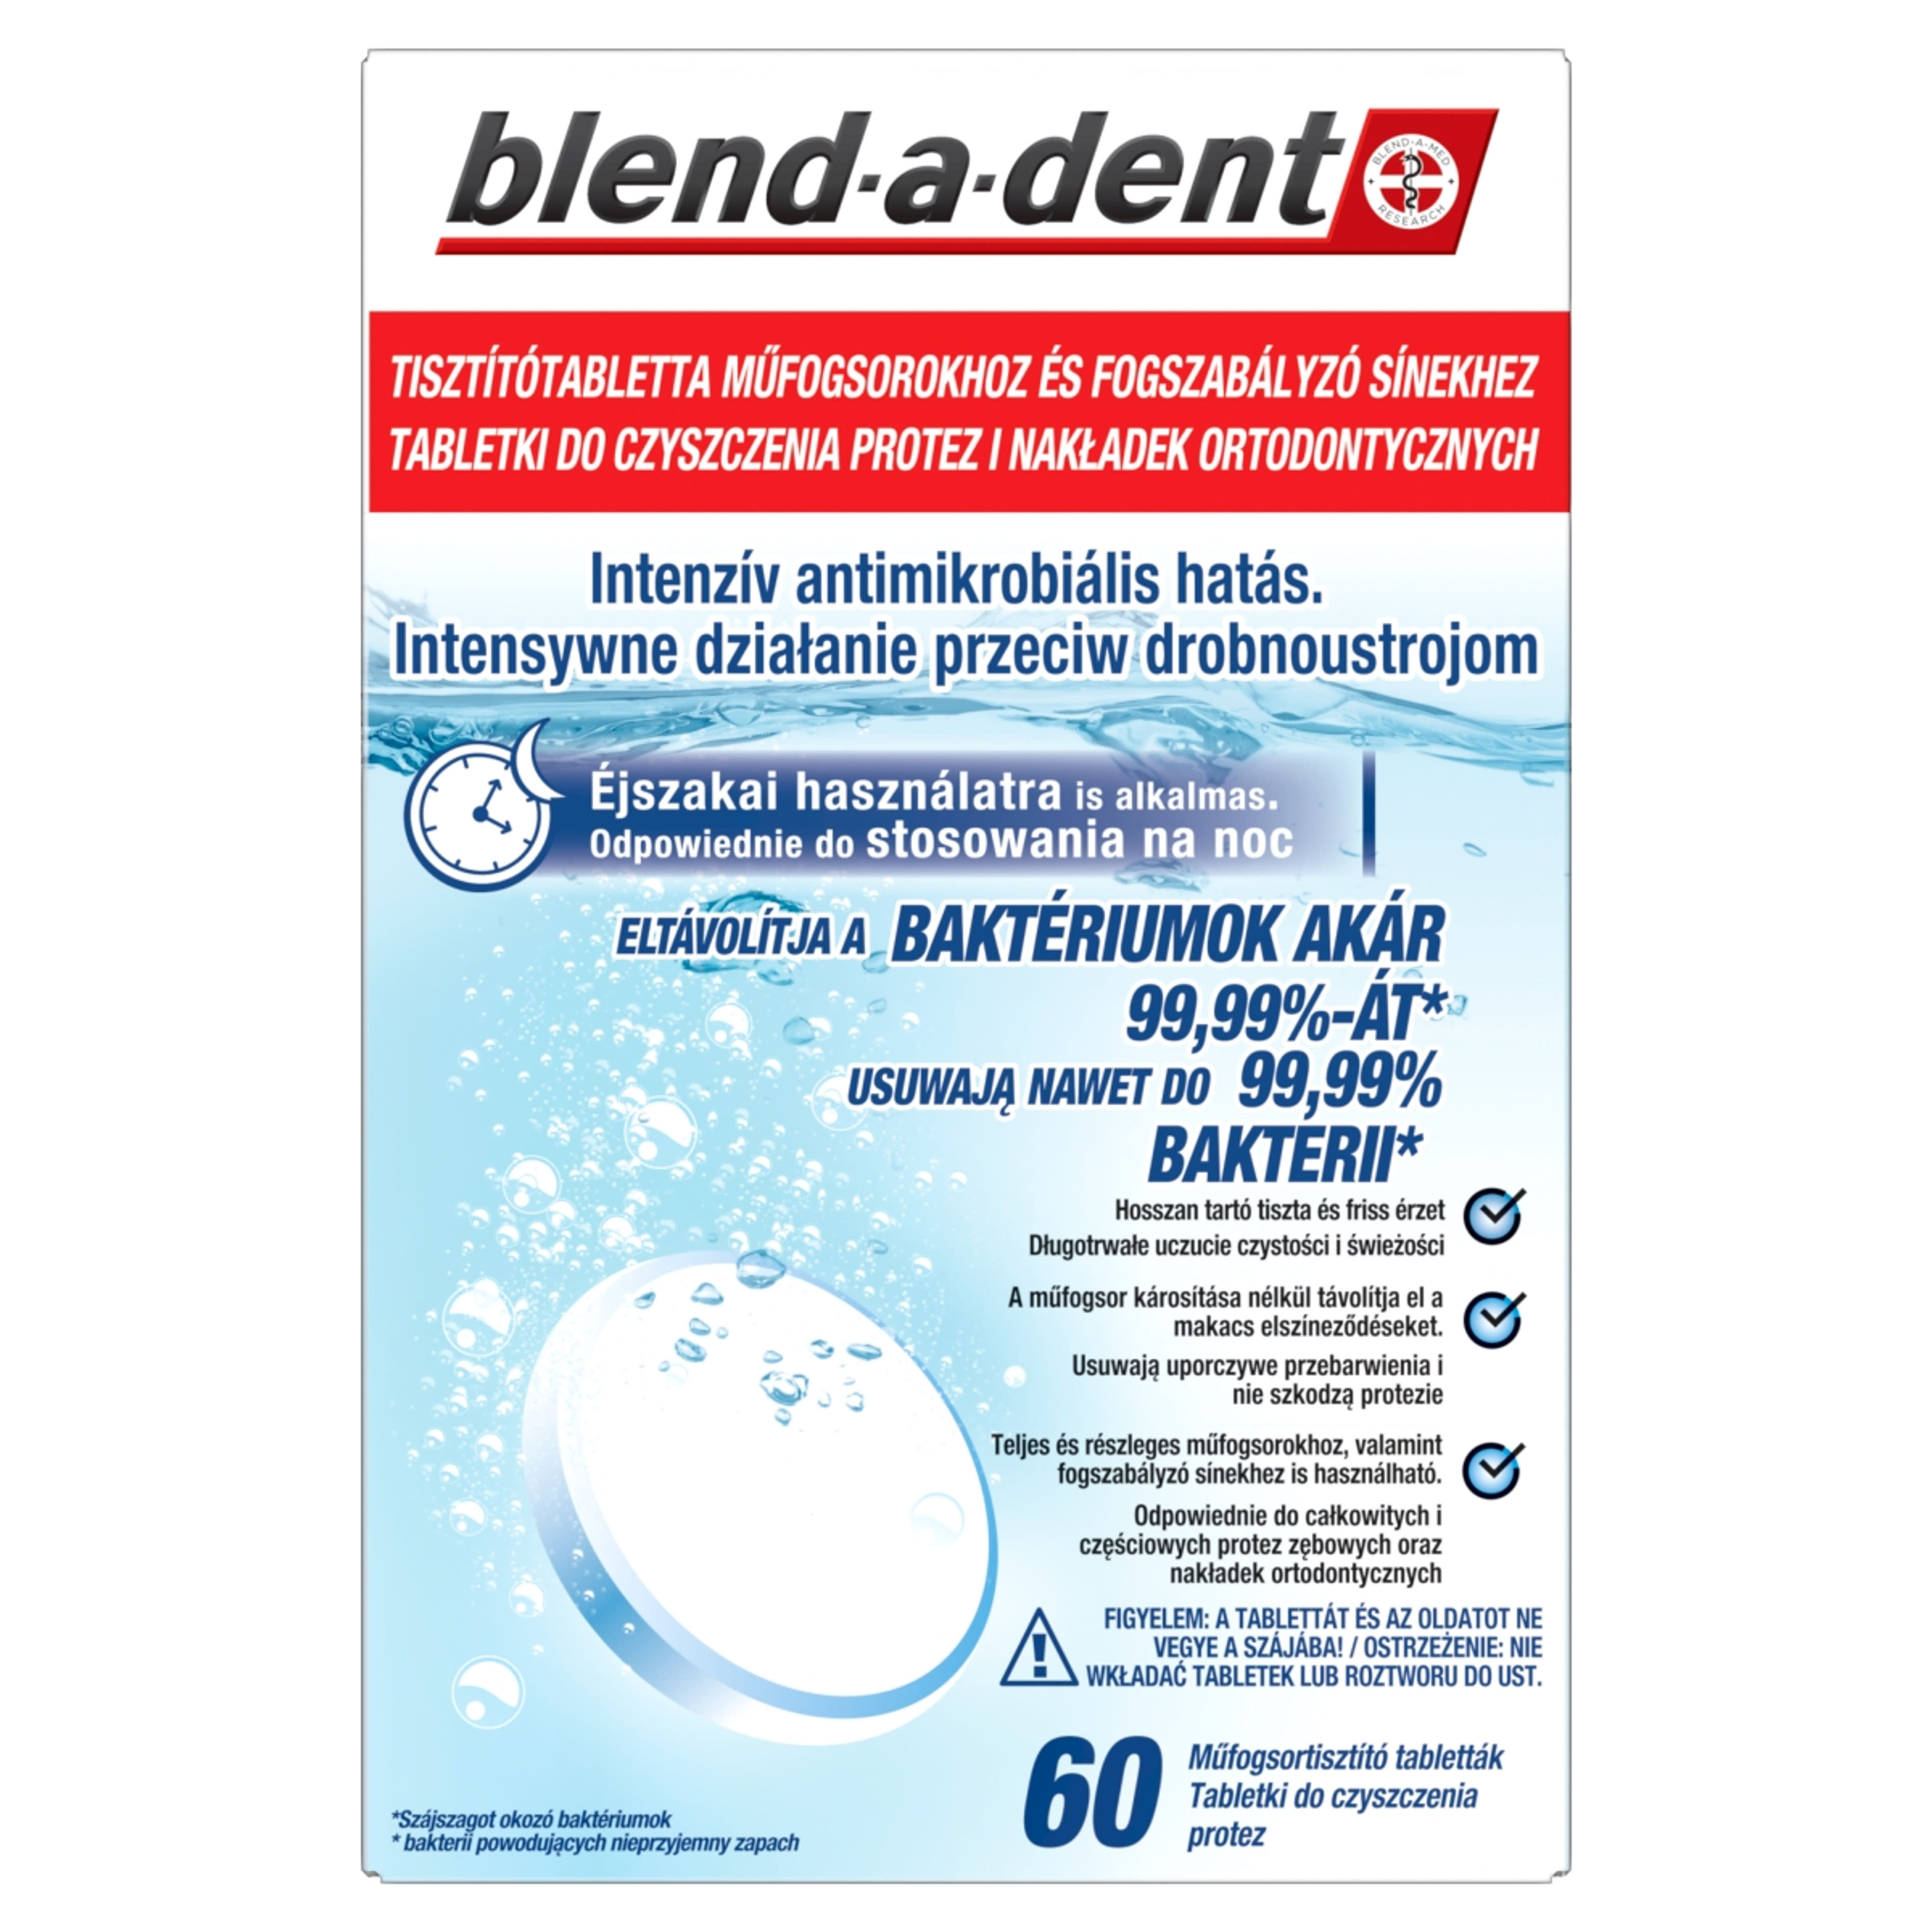 Blend-a-Dent Extra Fresh protézistisztító tabletta - 60 db